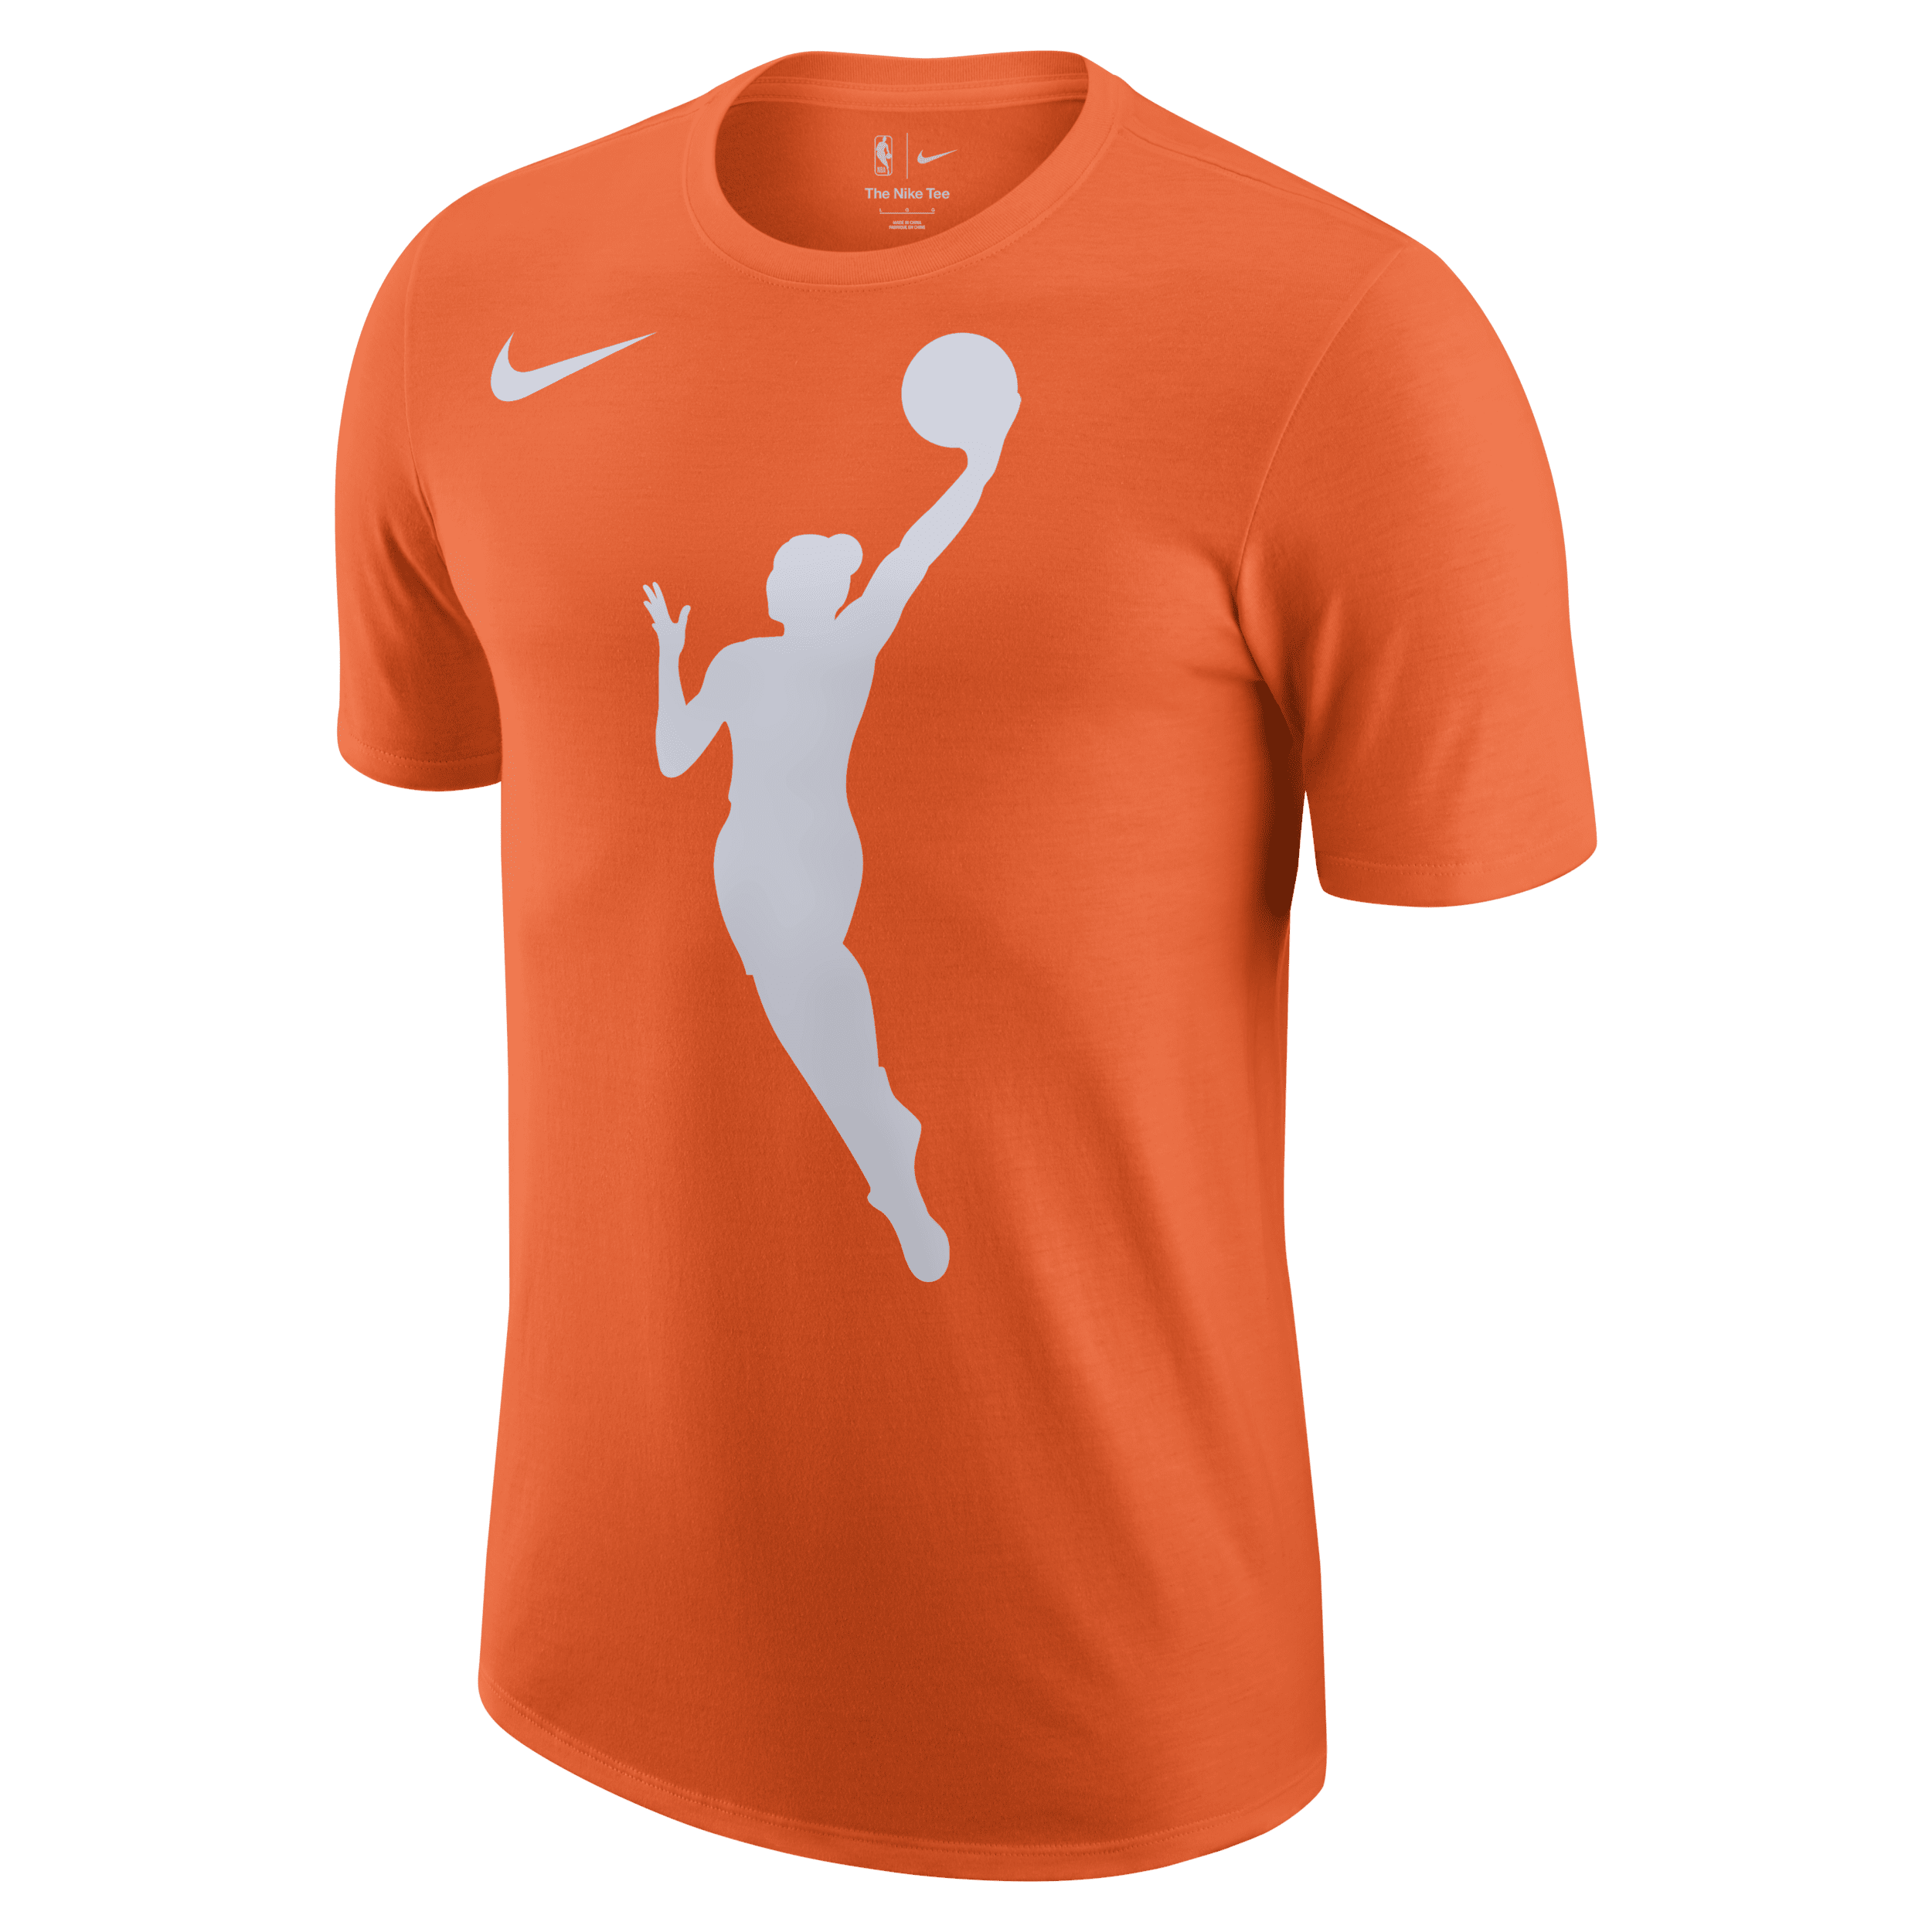 Team 13 Nike WNBA-shirt - Oranje